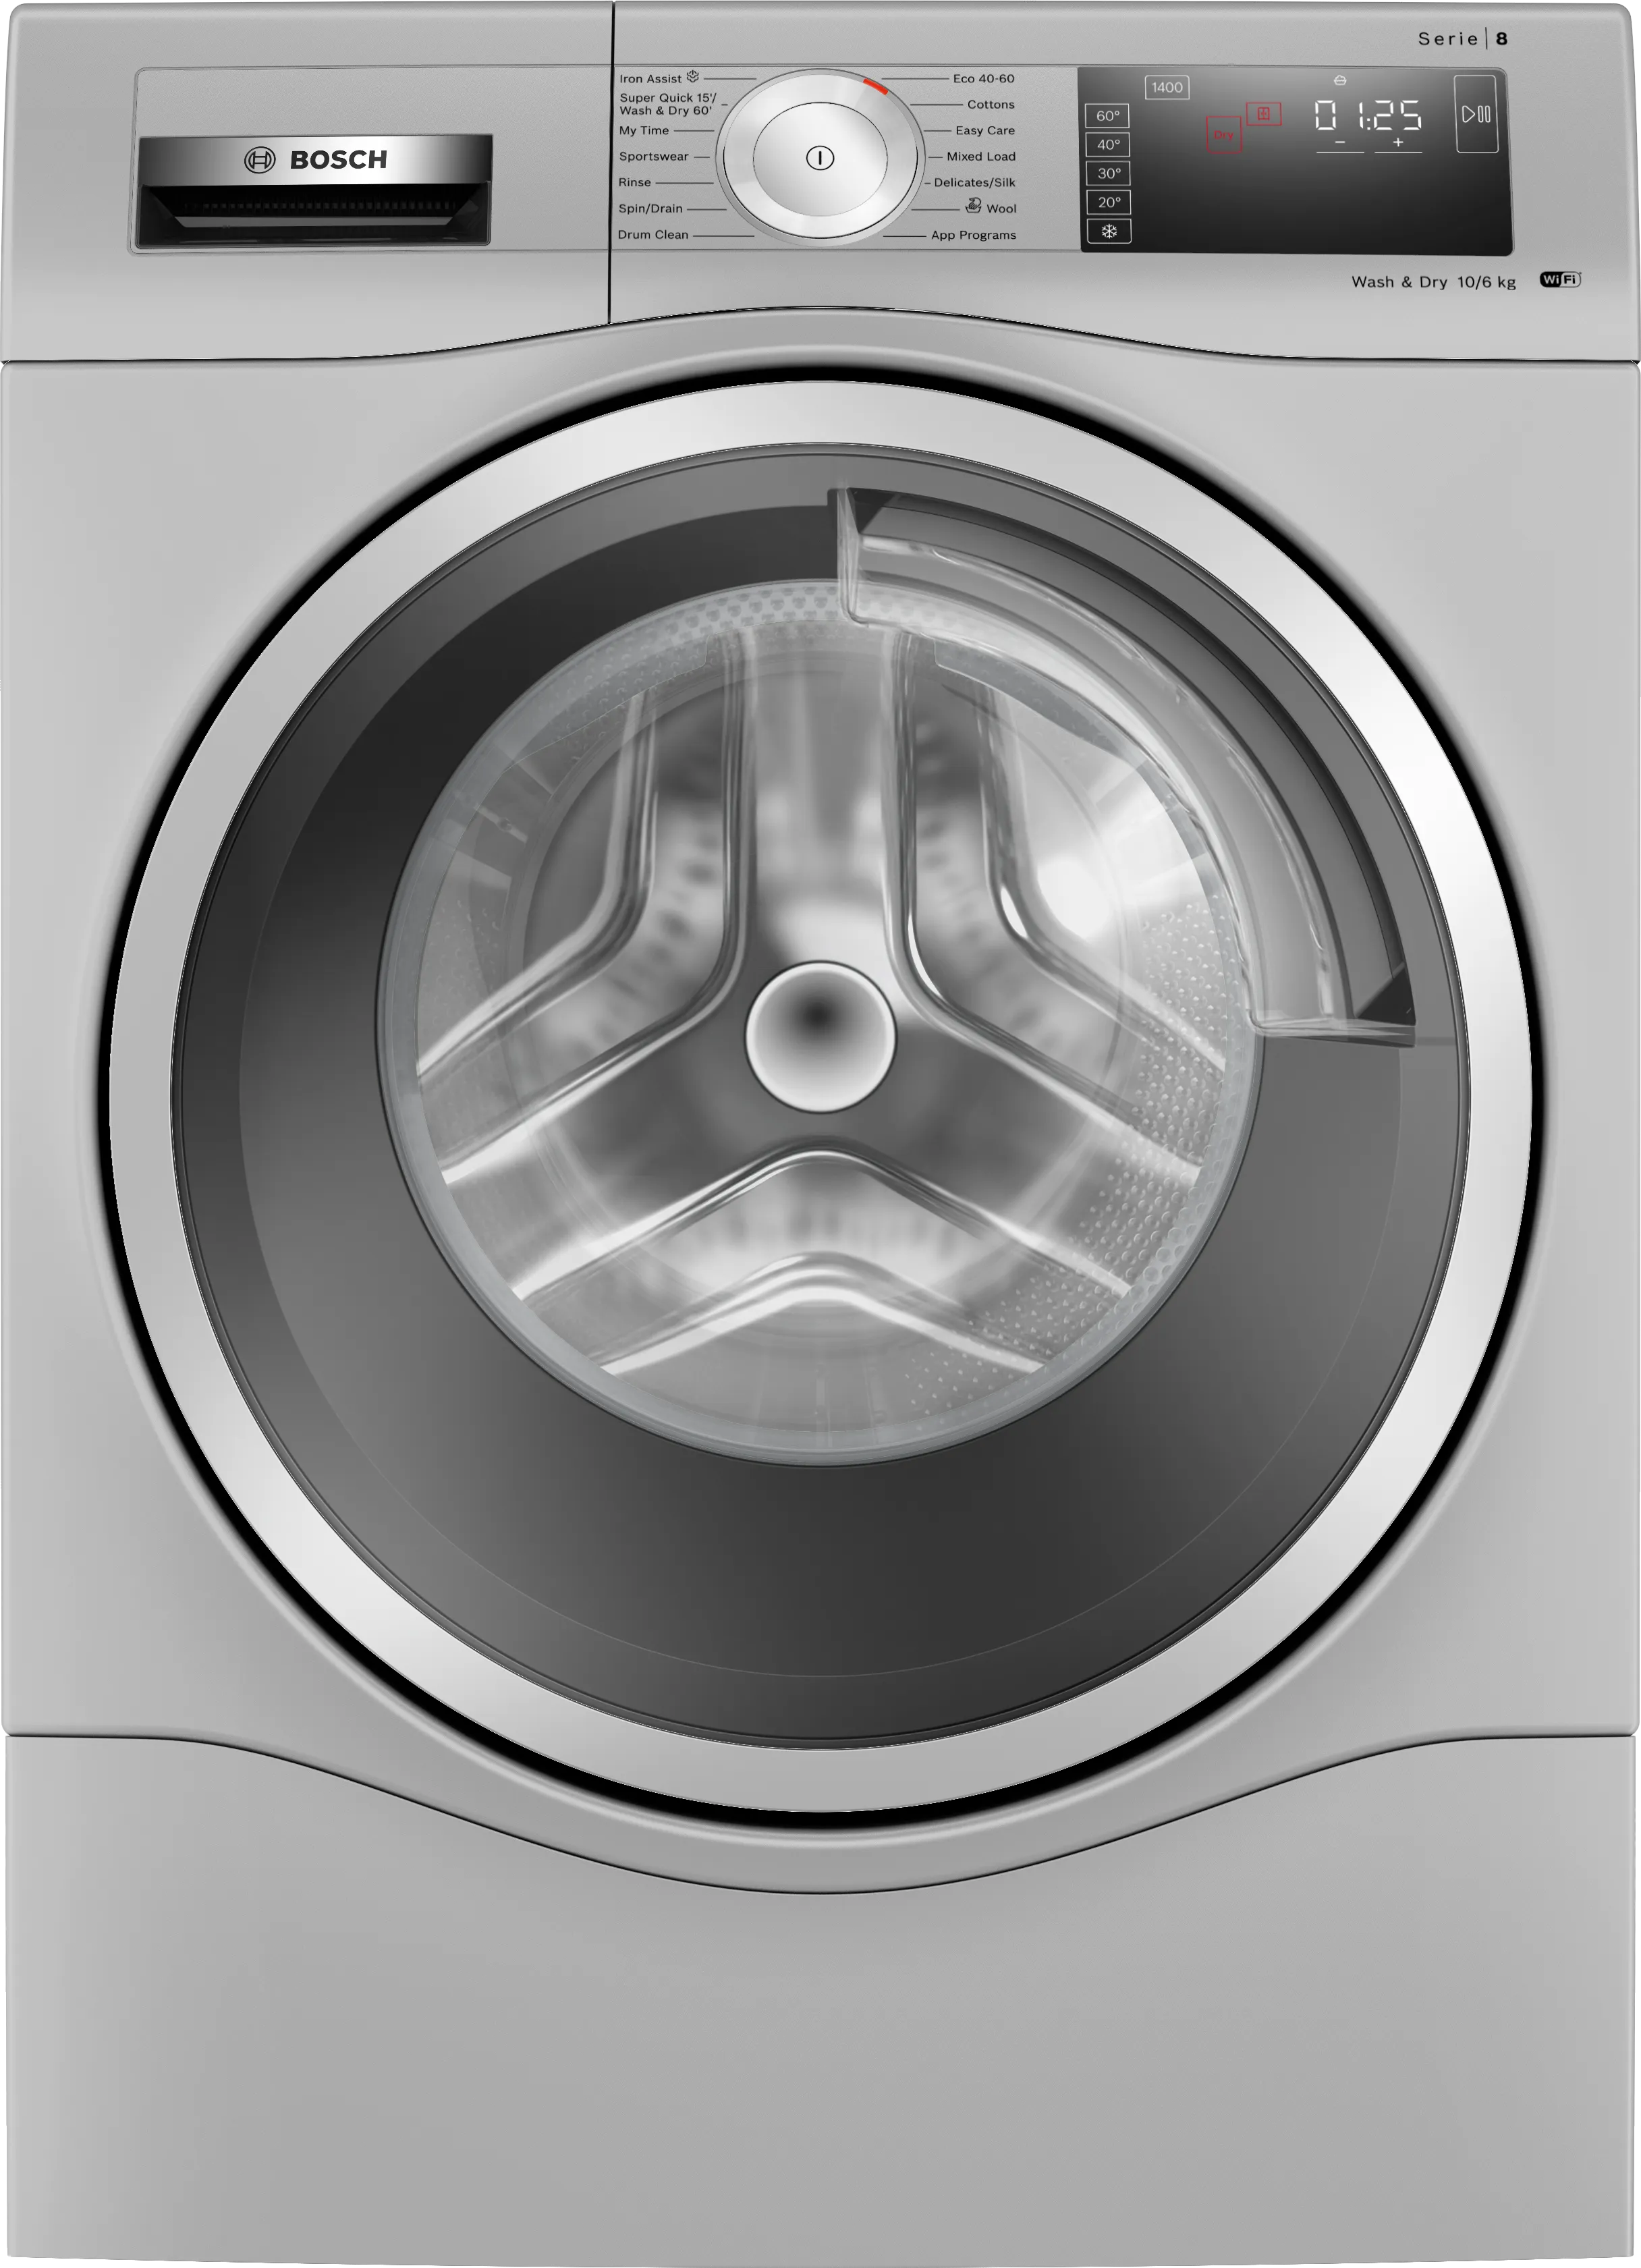 Series 8 washer-dryer 10/6 kg 1400 rpm 